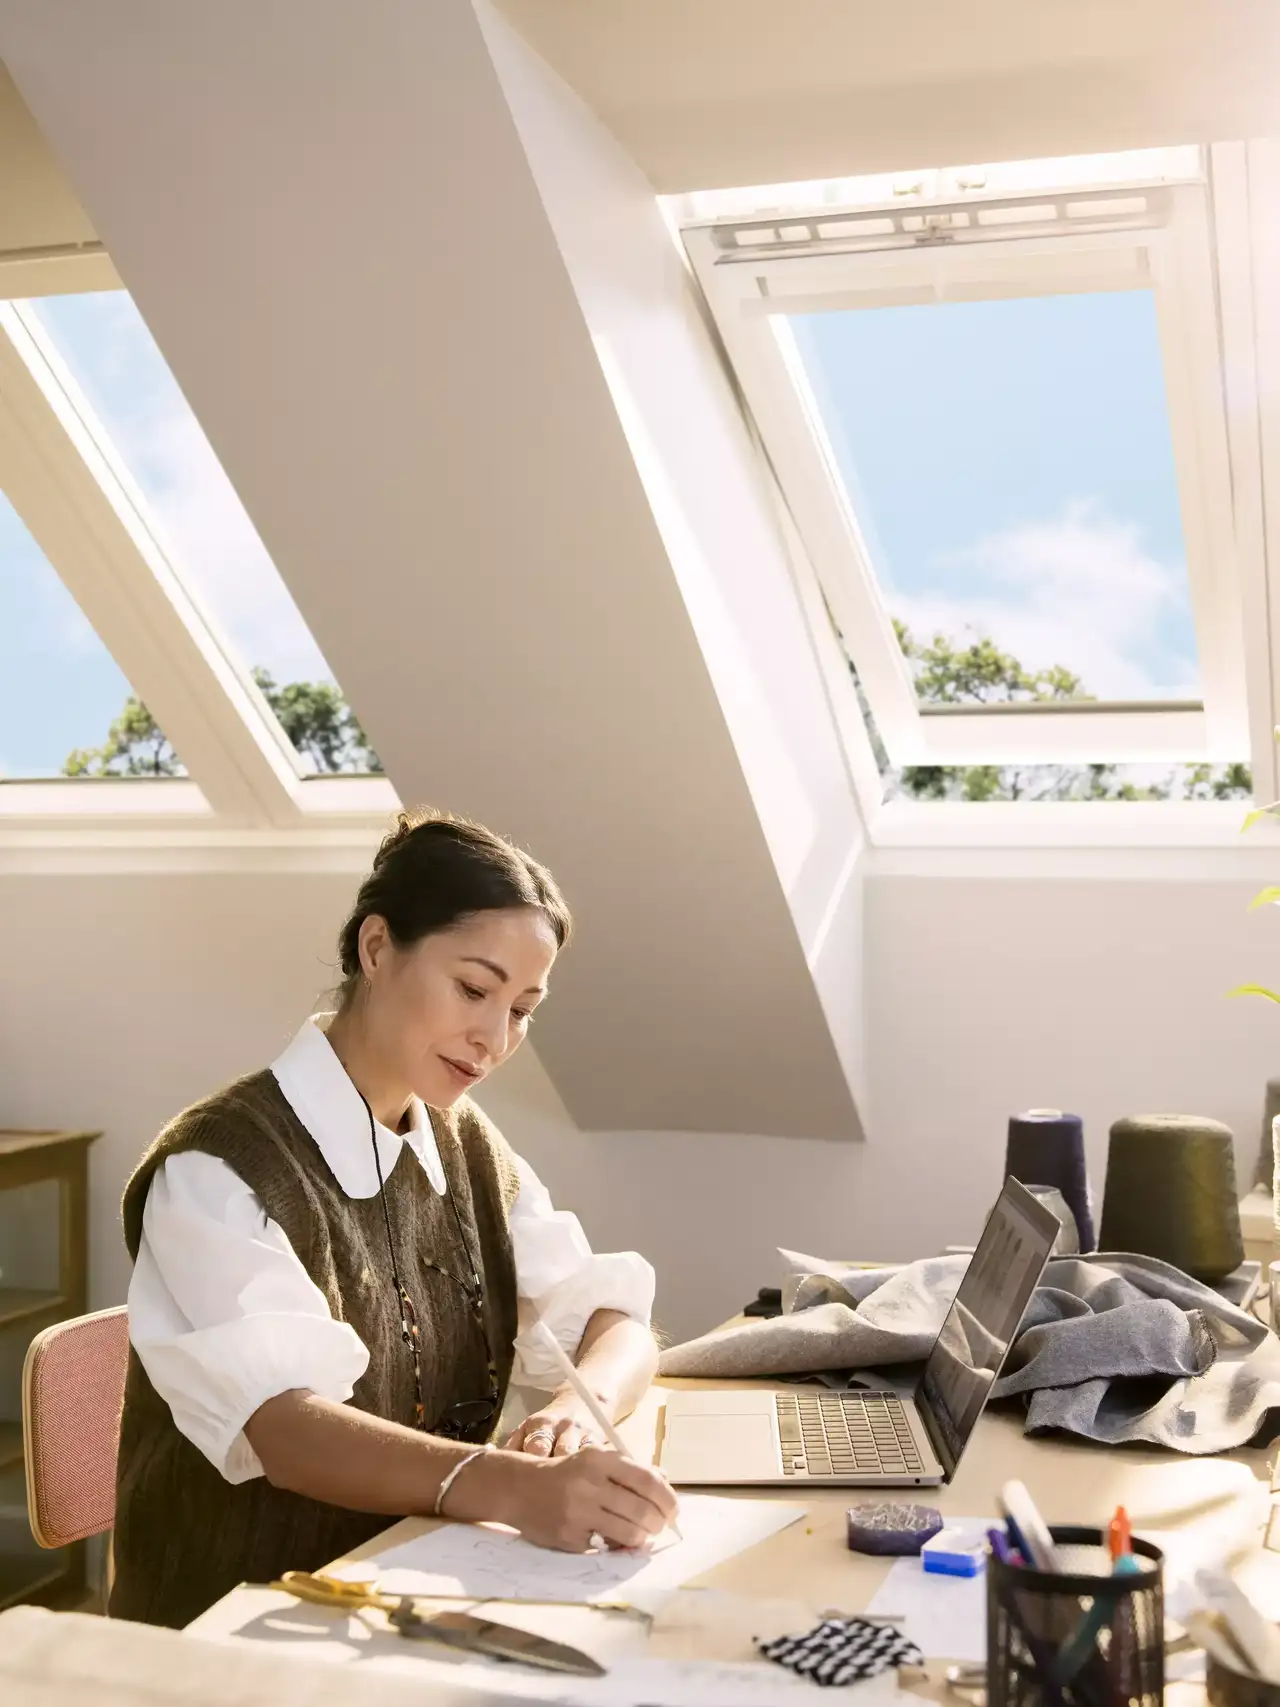 Homeoffice mit VELUX Dachflächenfenster, das reichlich Sonnenlicht über einen aufgeräumten Arbeitsplatz mit Laptop und Utensilien liefert.